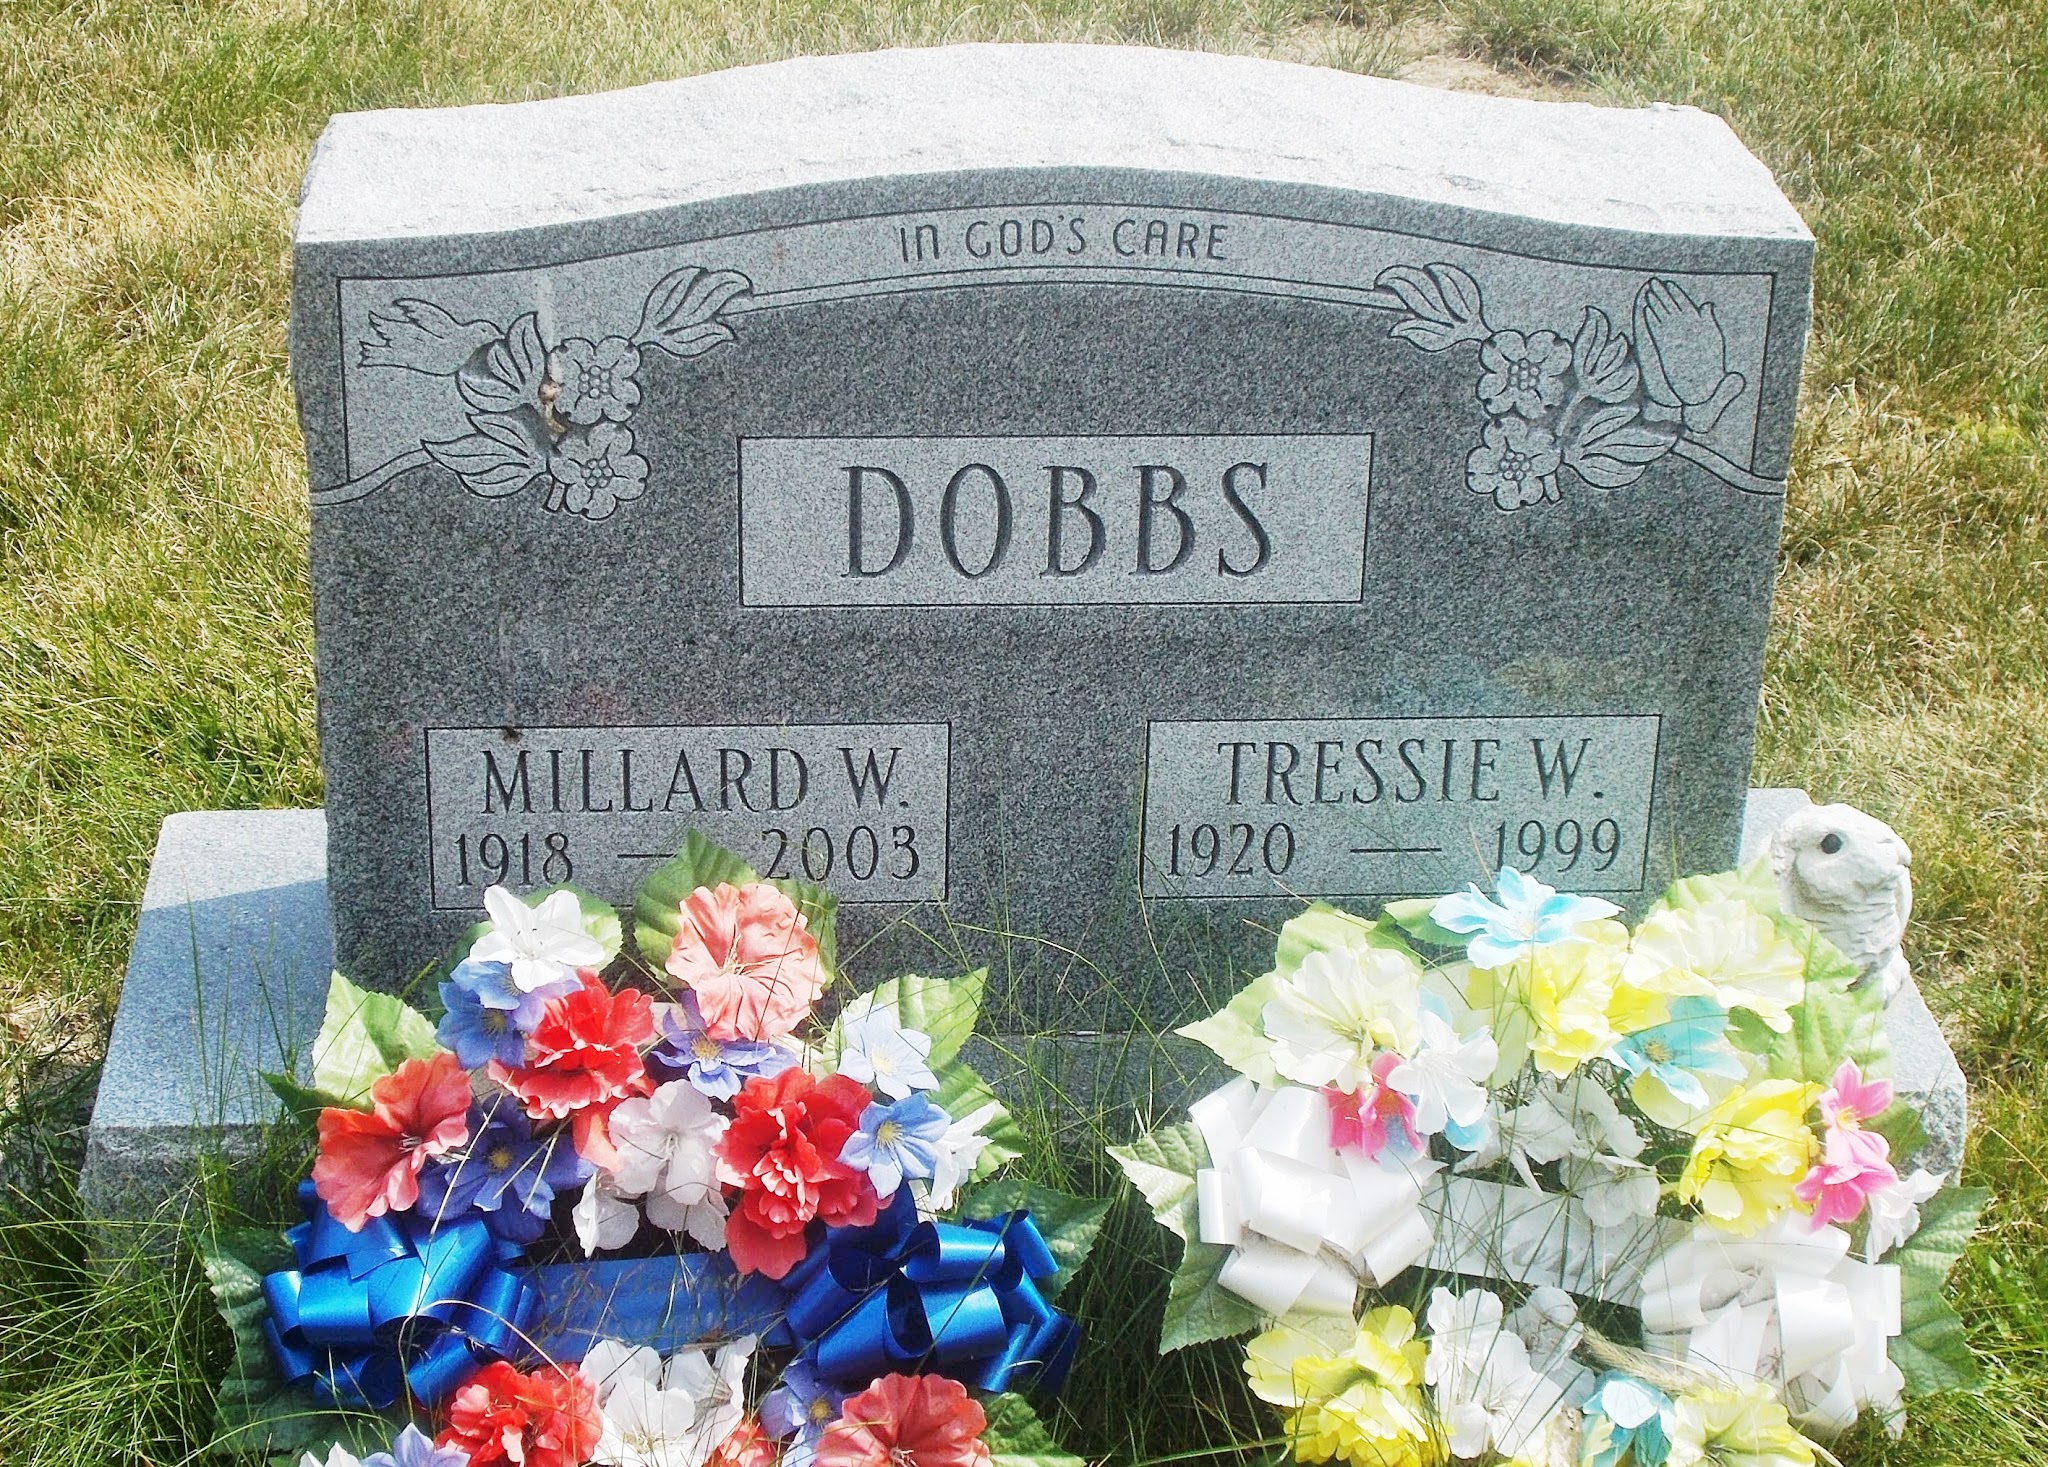 Tressie W Dobbs